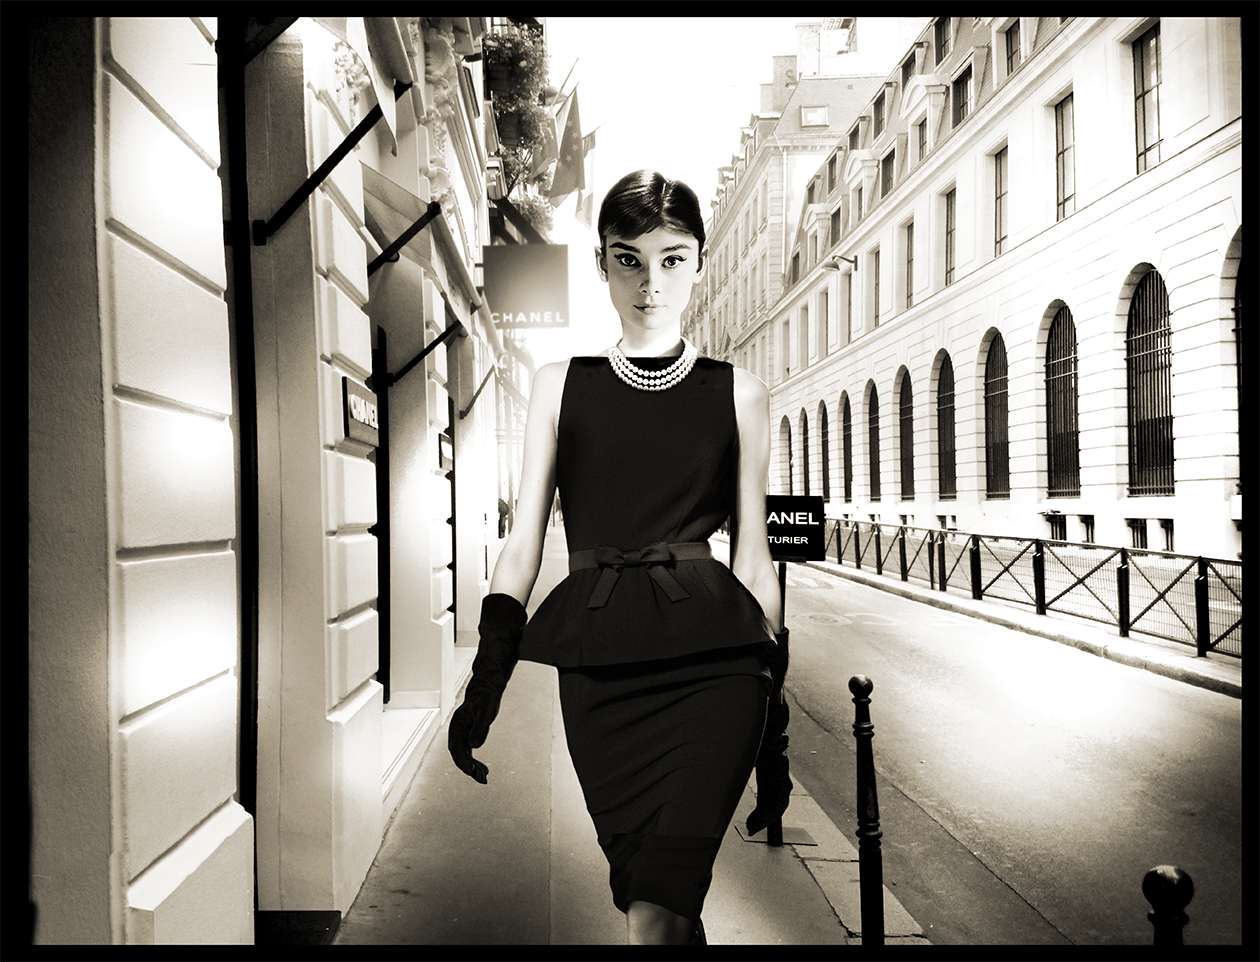 axel-crieger-Little-black-dress-AudreyHepburn-Fotocollage-auf-Musuemsleinwand-Edition12